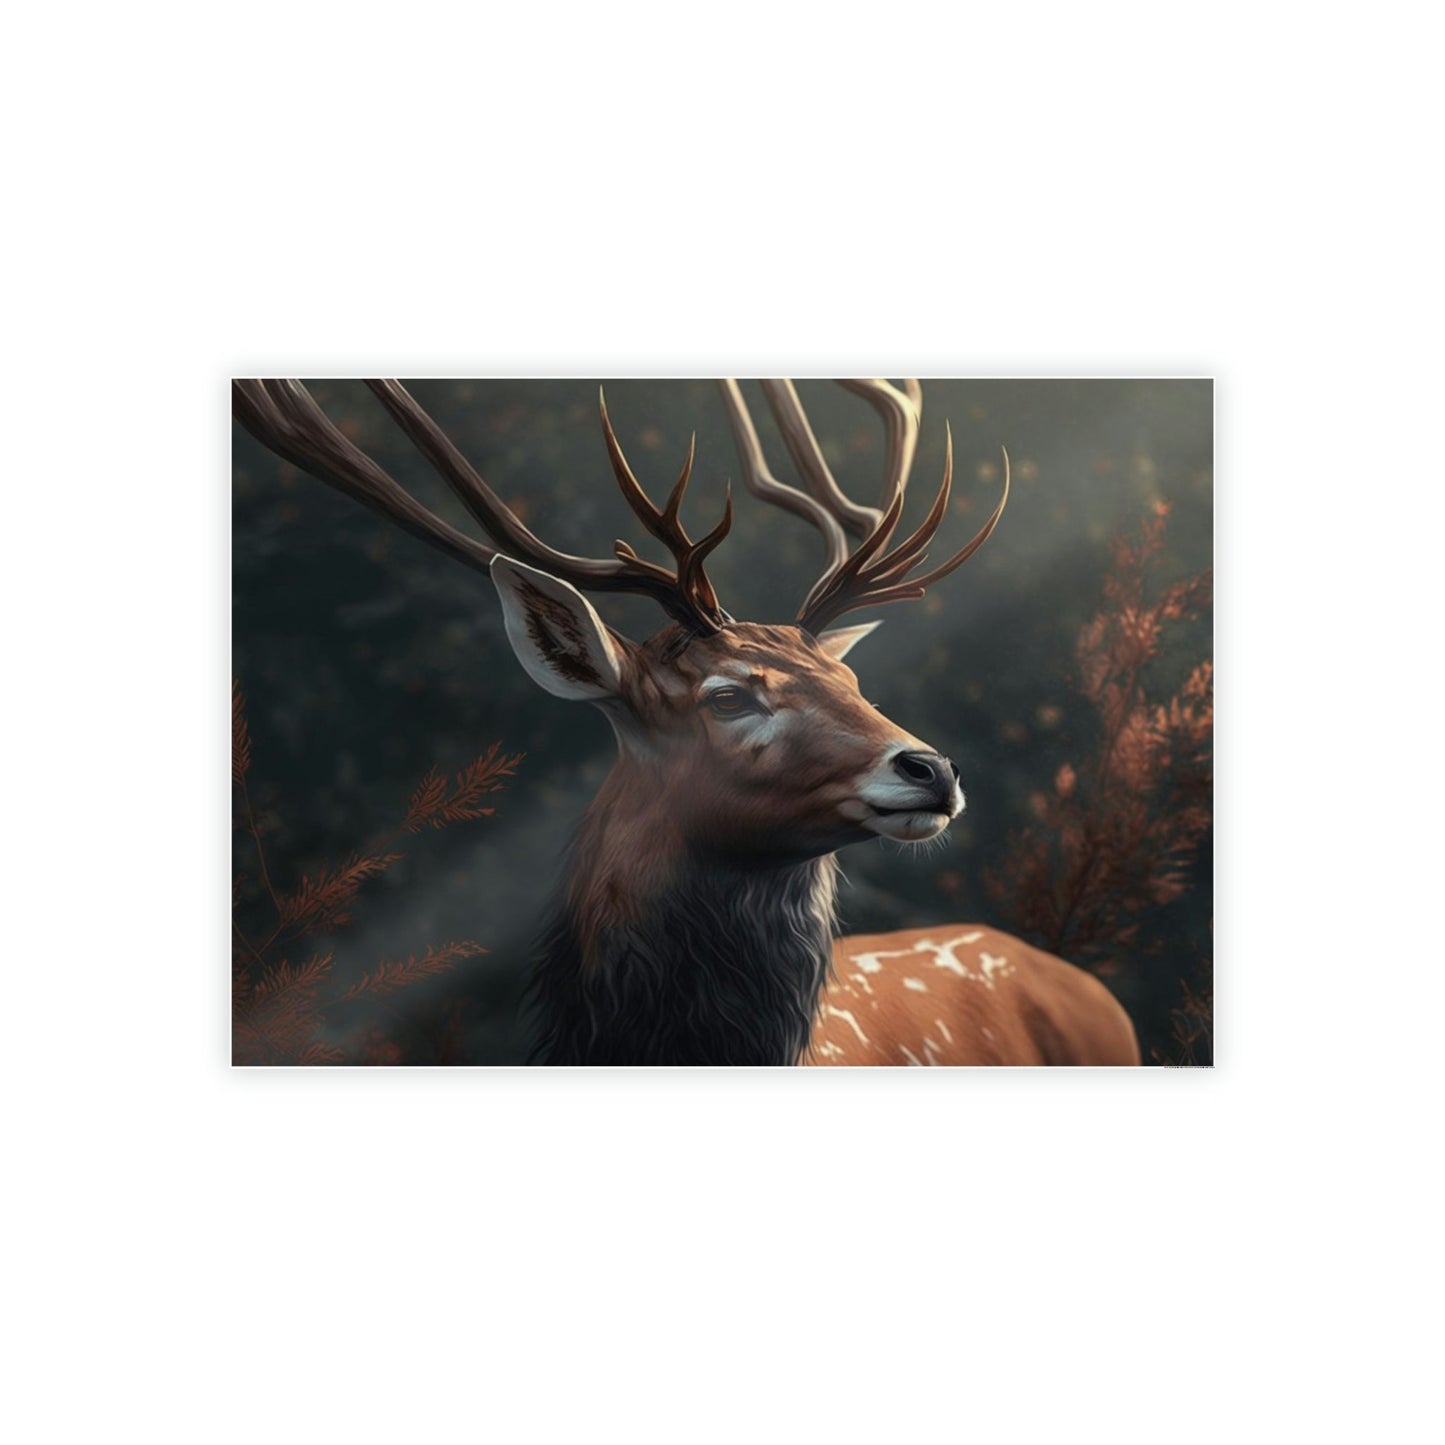 Deer's Solitude: A Canvas Wildlife Contemplation